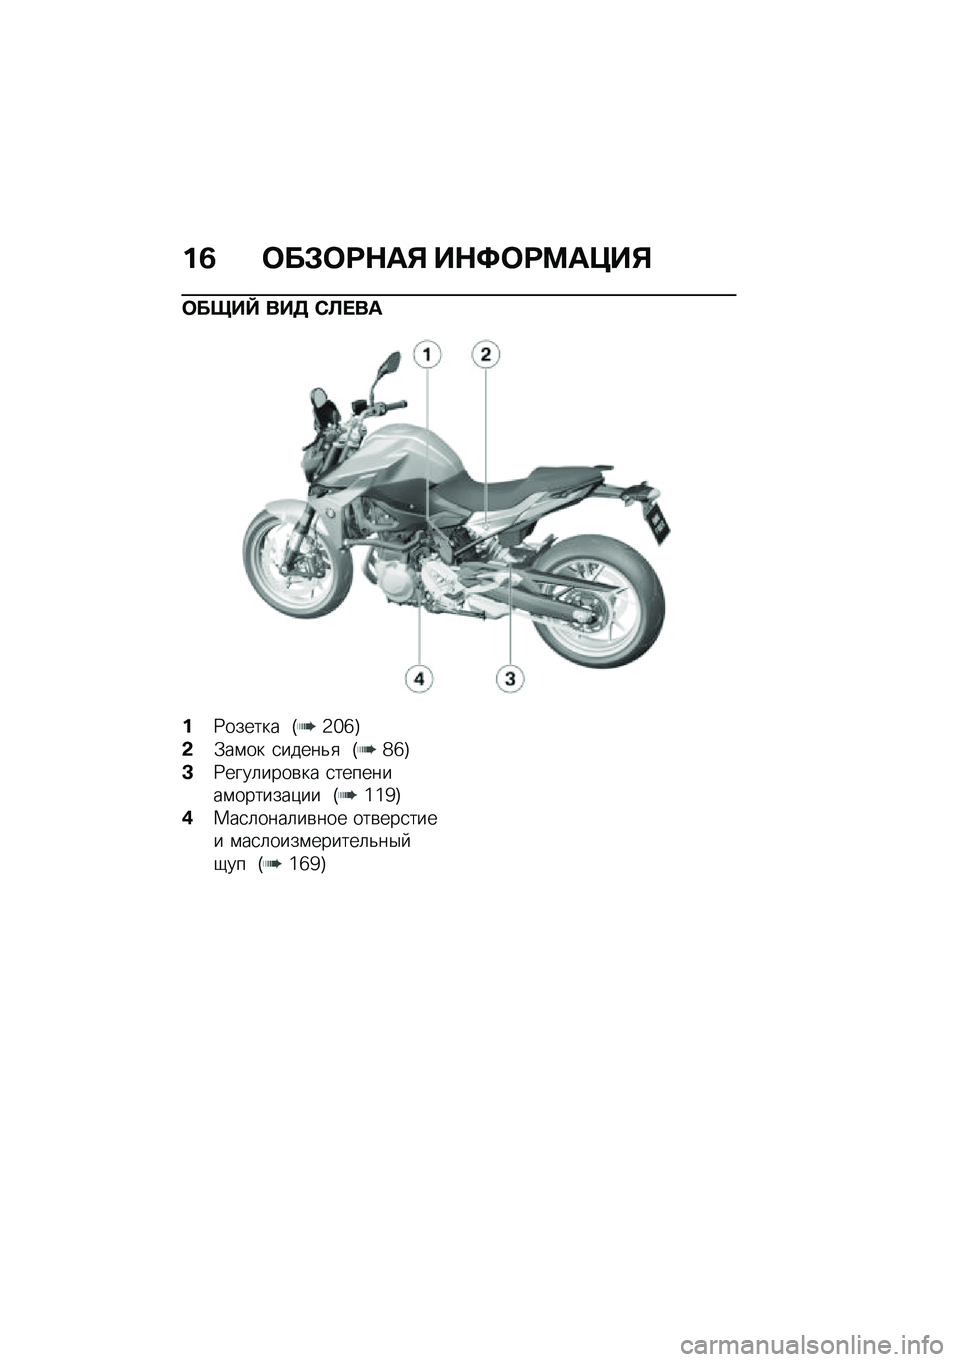 BMW MOTORRAD F 900 R 2020  Руководство по эксплуатации (in Russian) �%�8 ���*���+�	�, ��+�?����	�@��,
���&��d ��� �1�
���	
�%�9������ �I�2�]�^�J
�-�.��\f�� �
�����&�
 �I�_�^�J
�C�9����	����\b�� �
��������\f�������)��